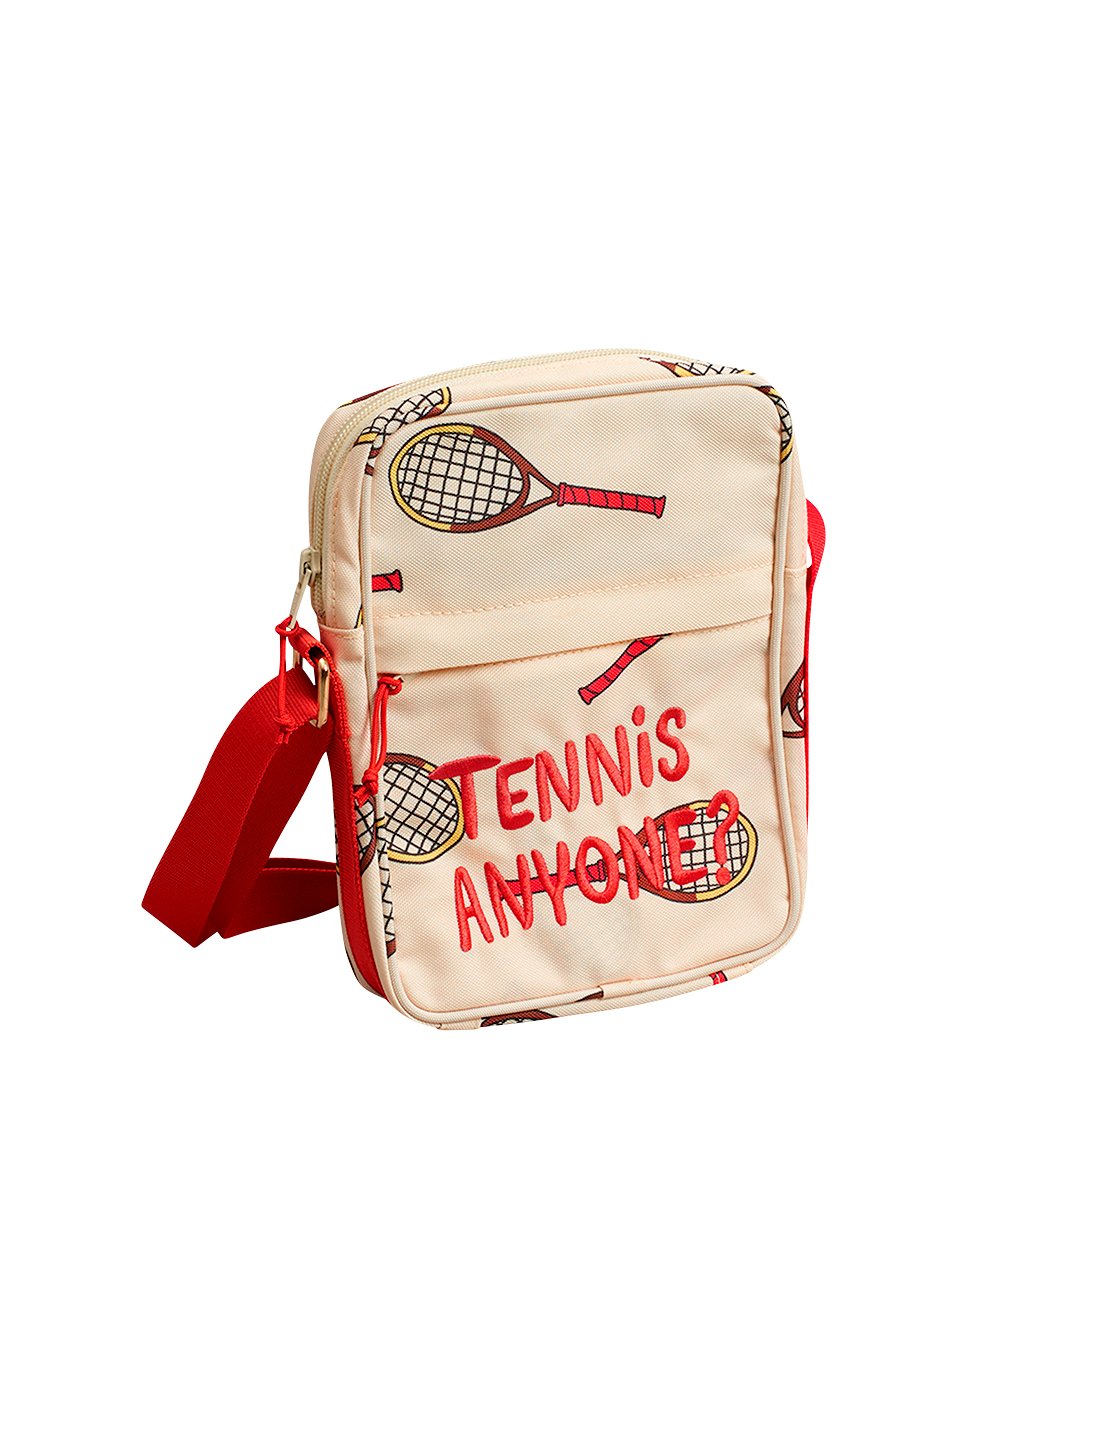 Tasche Tennis messenger bag